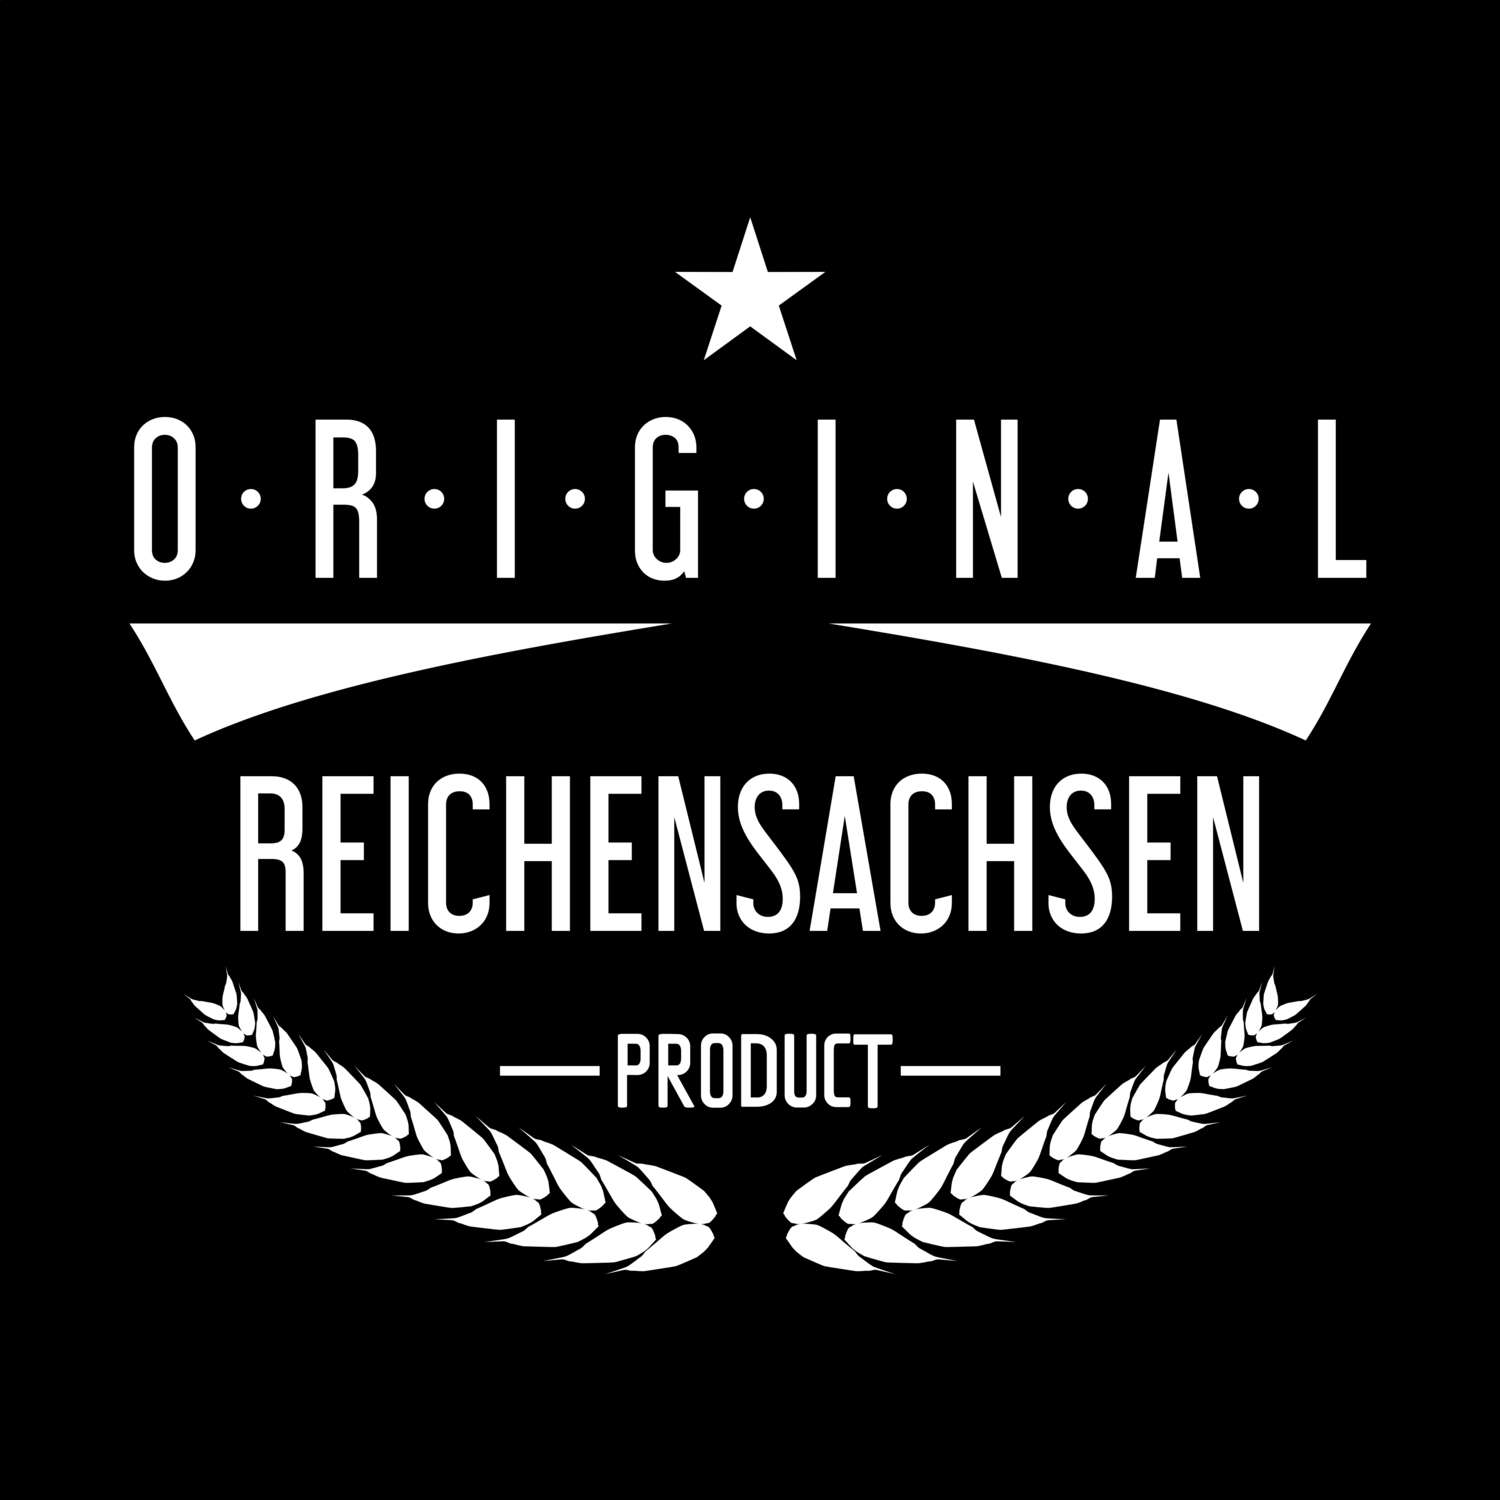 Reichensachsen T-Shirt »Original Product«